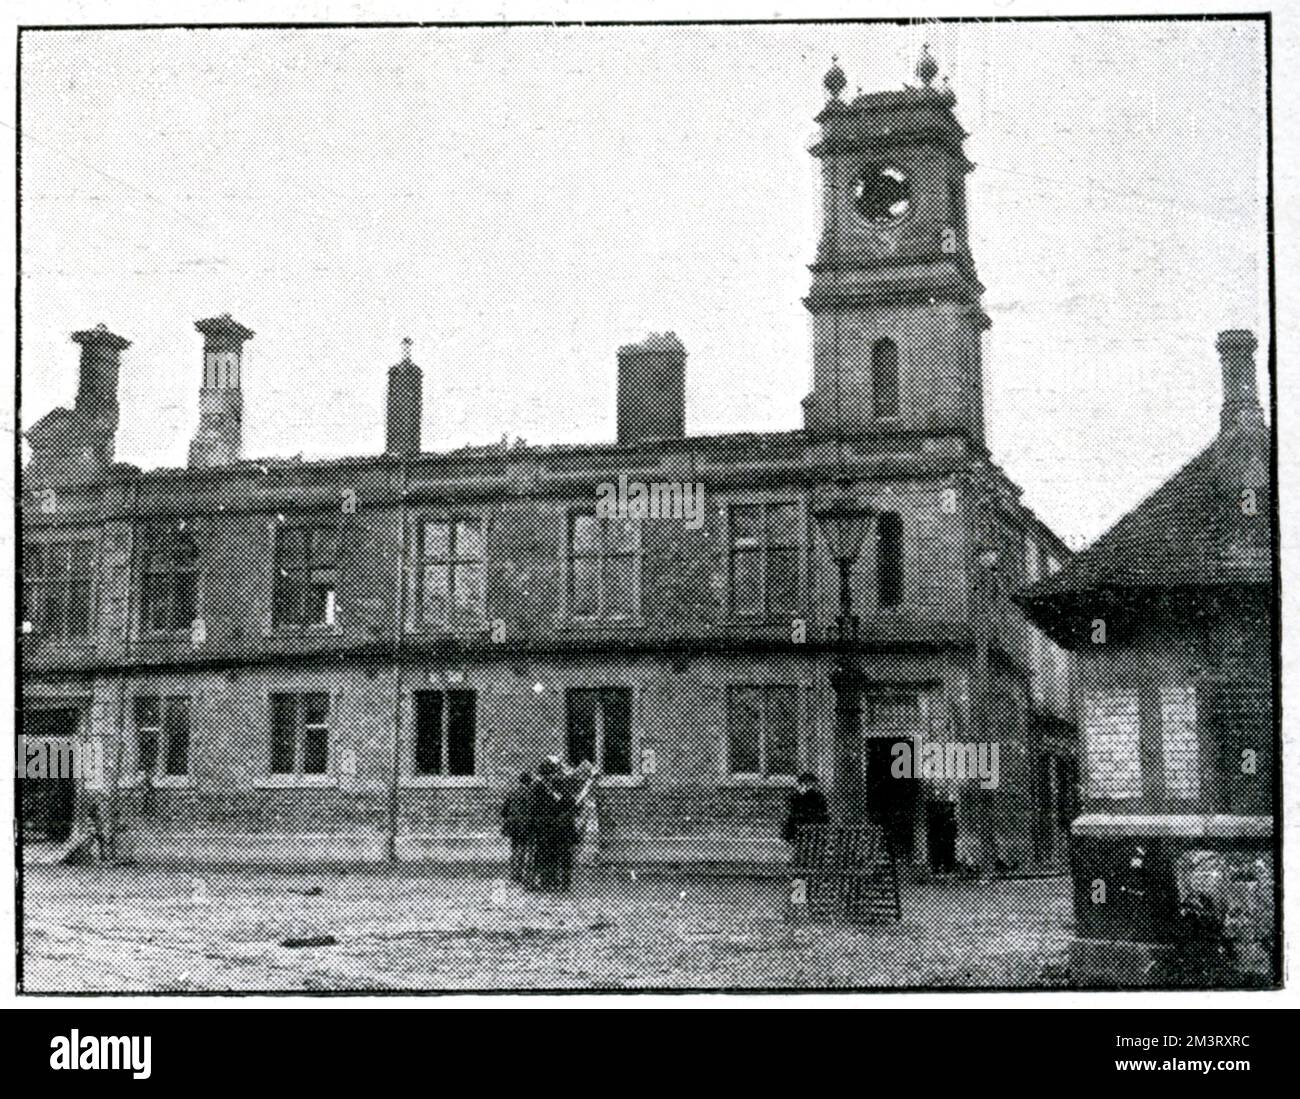 L'hôtel de ville ruiné dans le village de Galway de Tuam, en Irlande, à la suite de représailles après le meurtre de deux gendarmes de la police pendant la guerre d'indépendance, juillet 1920. Date: 1921 Banque D'Images